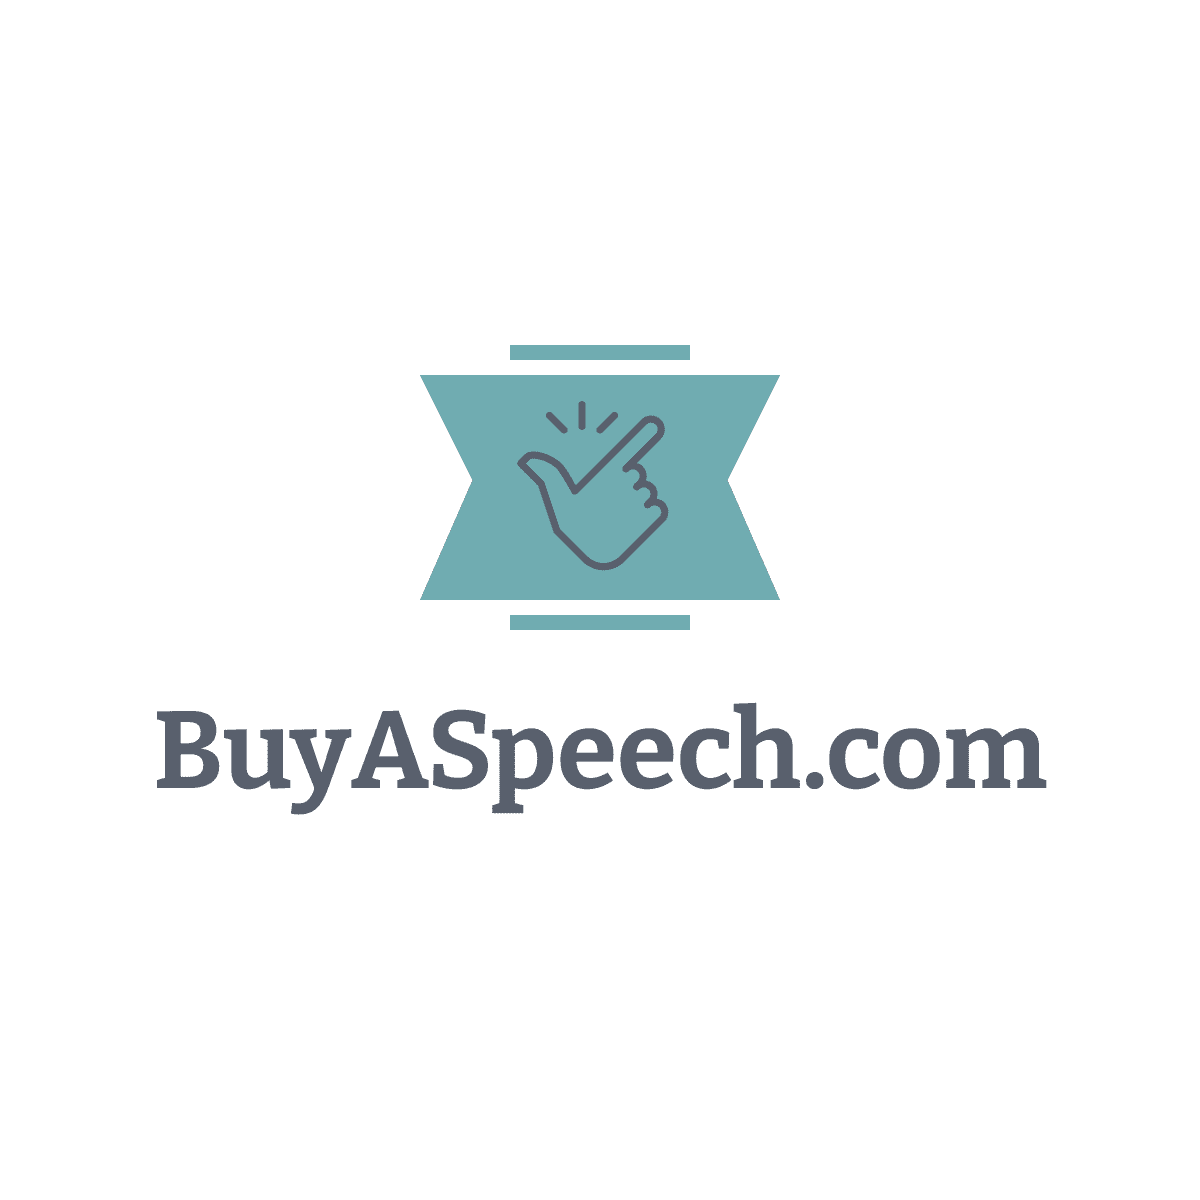 Buy a Speech